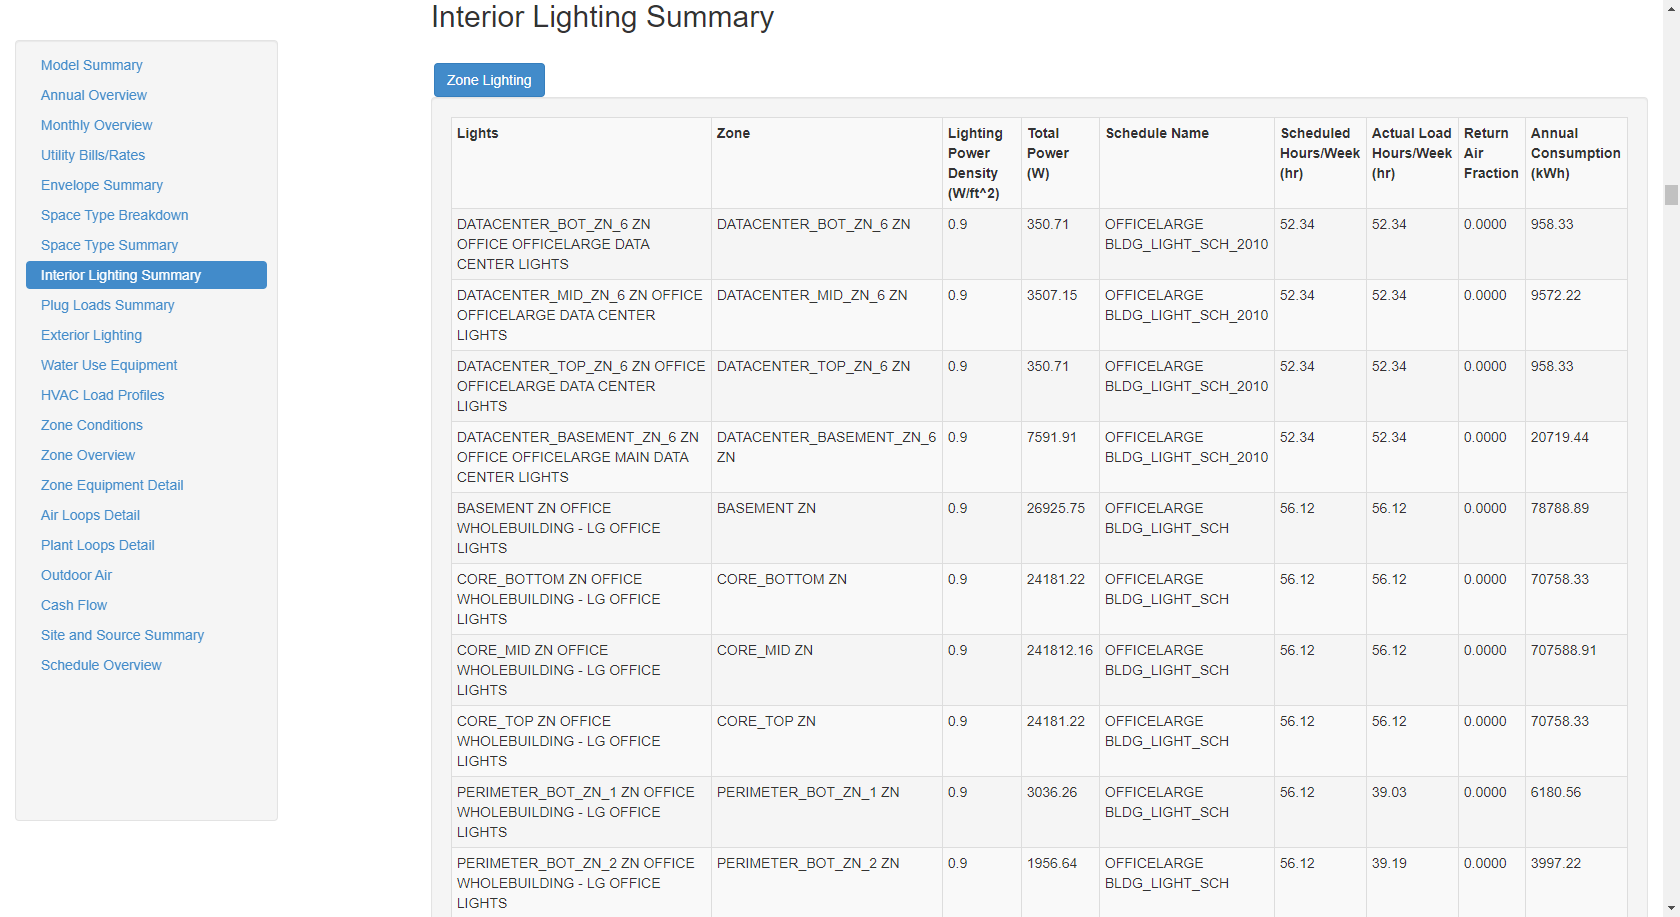 Interior Lighting Summary table